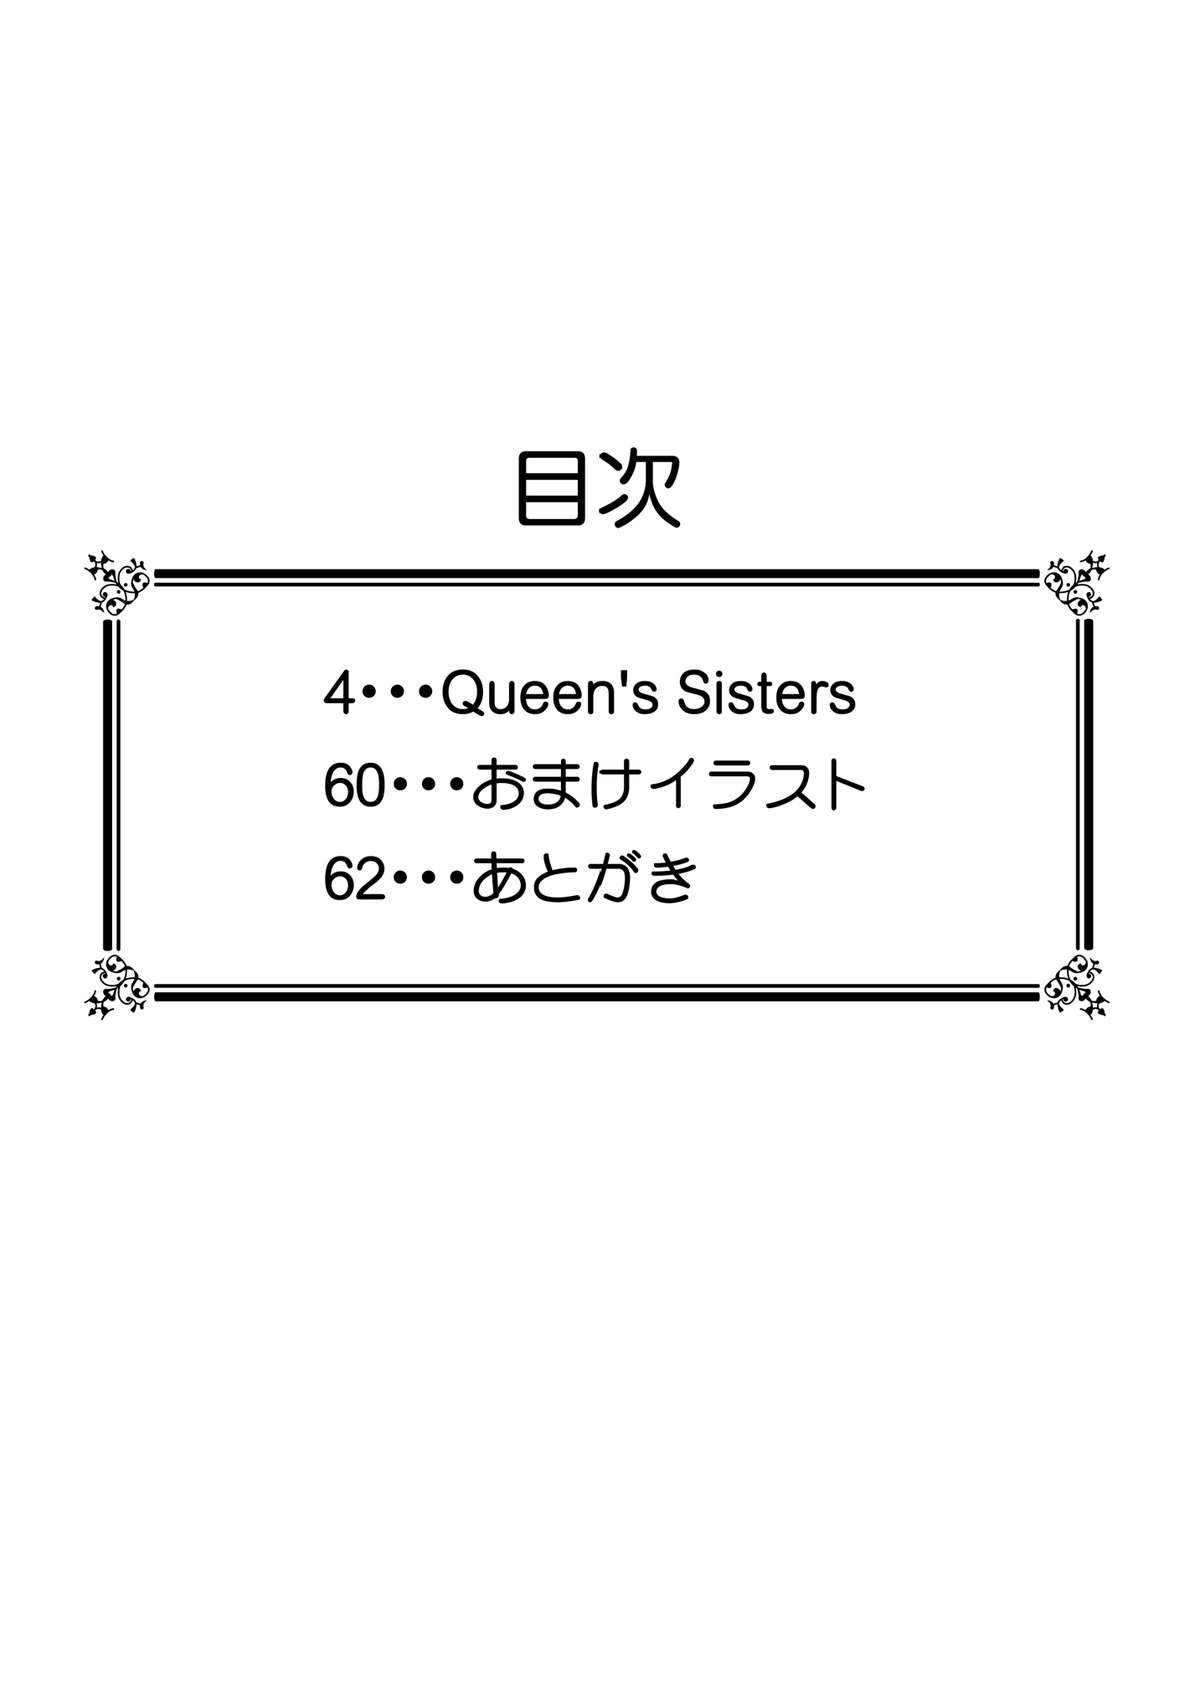 [白糖会] Queen's Sisters (クイーンズブレイド)